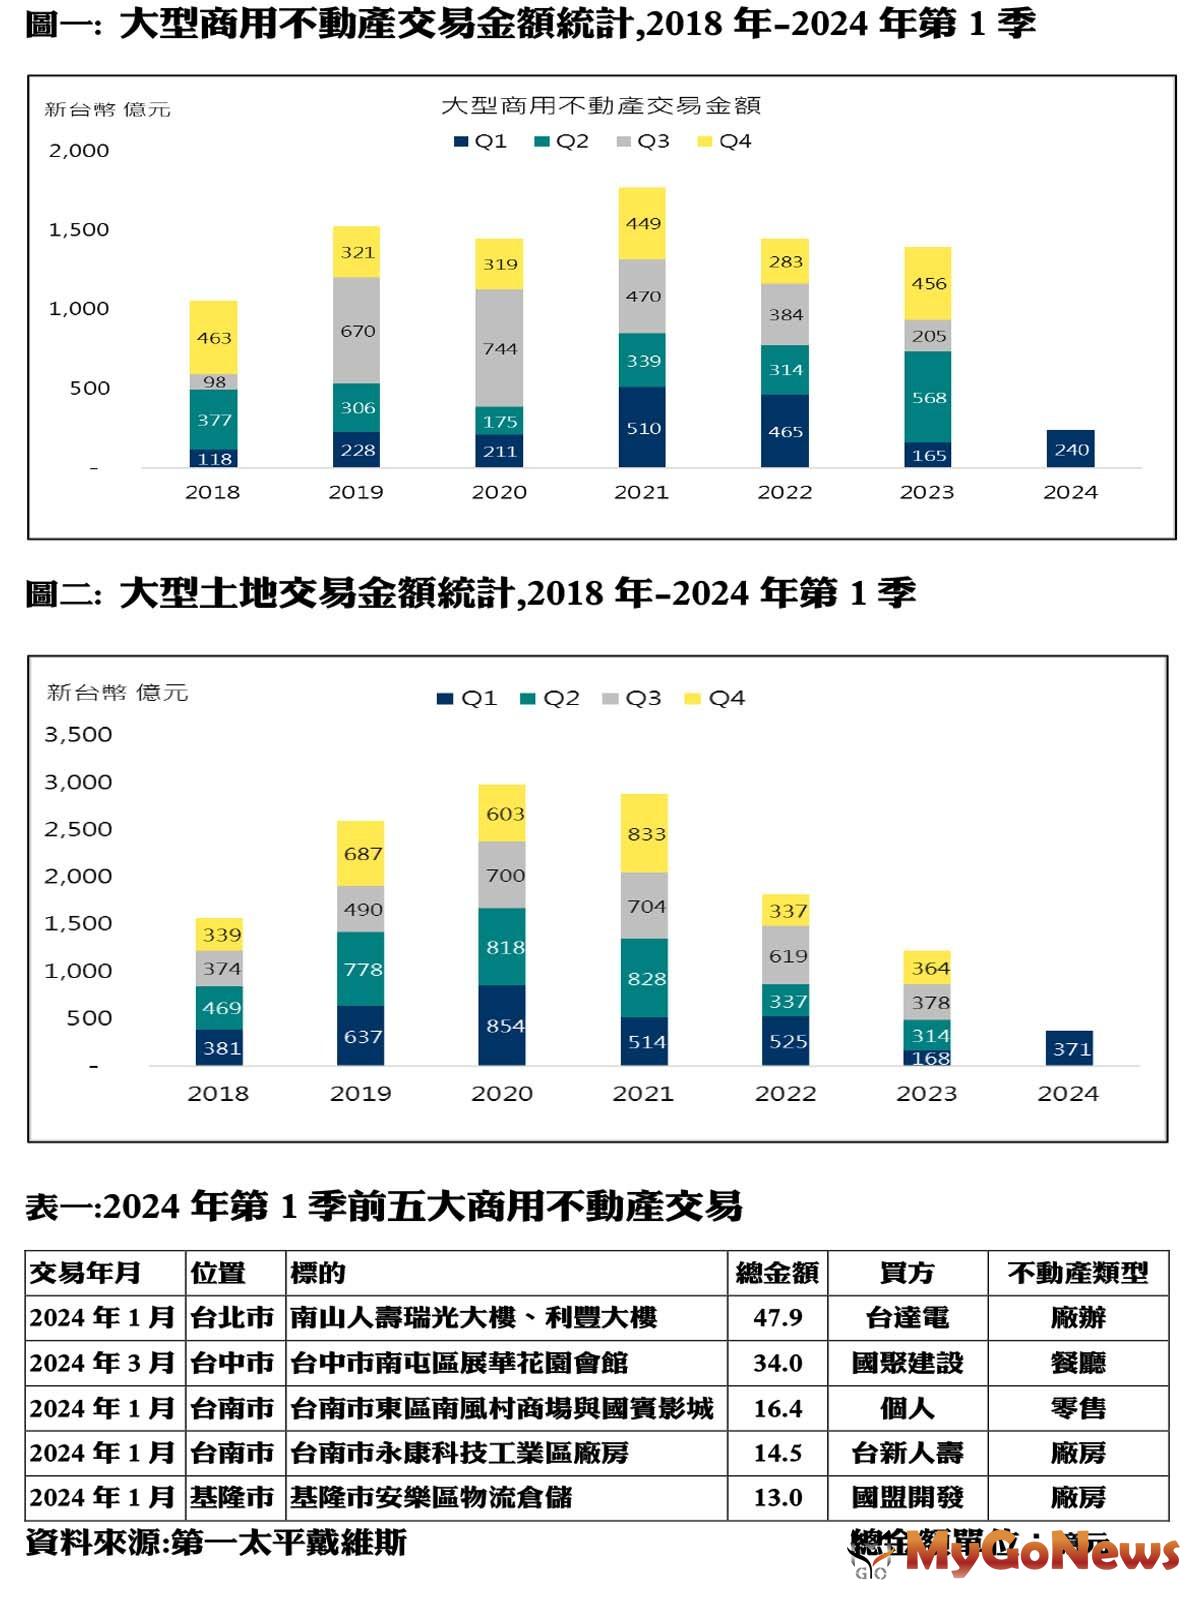 大型商用不動產交易金額統計,2018年-2024年第1季 MyGoNews房地產新聞 市場快訊